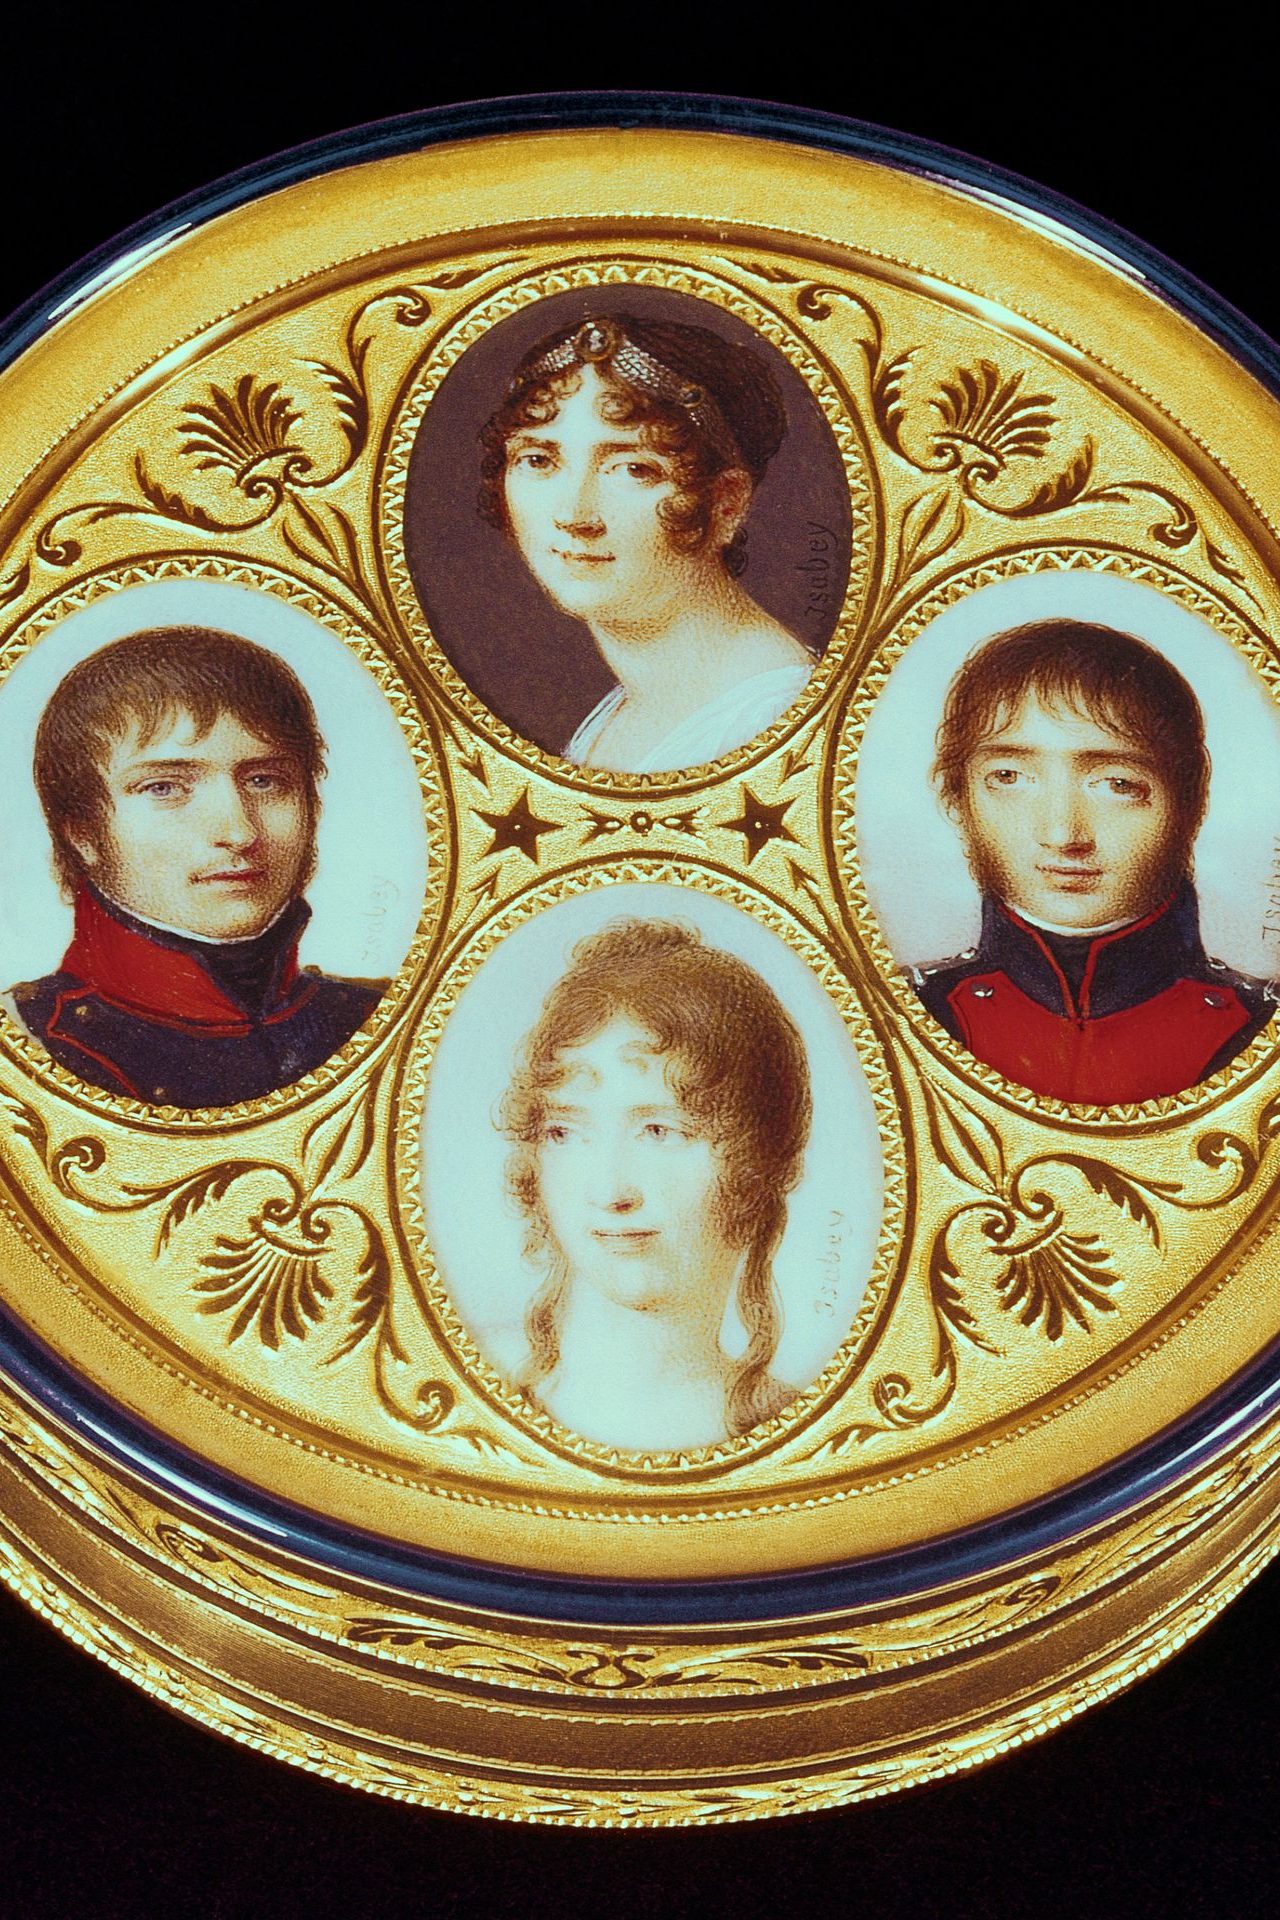 <p>Da questo matrimonio nacquero due figli: Eugène, nato nel 1781, che fu poi adottato da Napoleone e divenne Viceré d'Italia sotto l'Impero, e Hortense, nata nel 1783, che nel 1802 sposò Louis, uno dei fratelli dell'Imperatore, con il quale ebbe il futuro Napoleone III.</p>